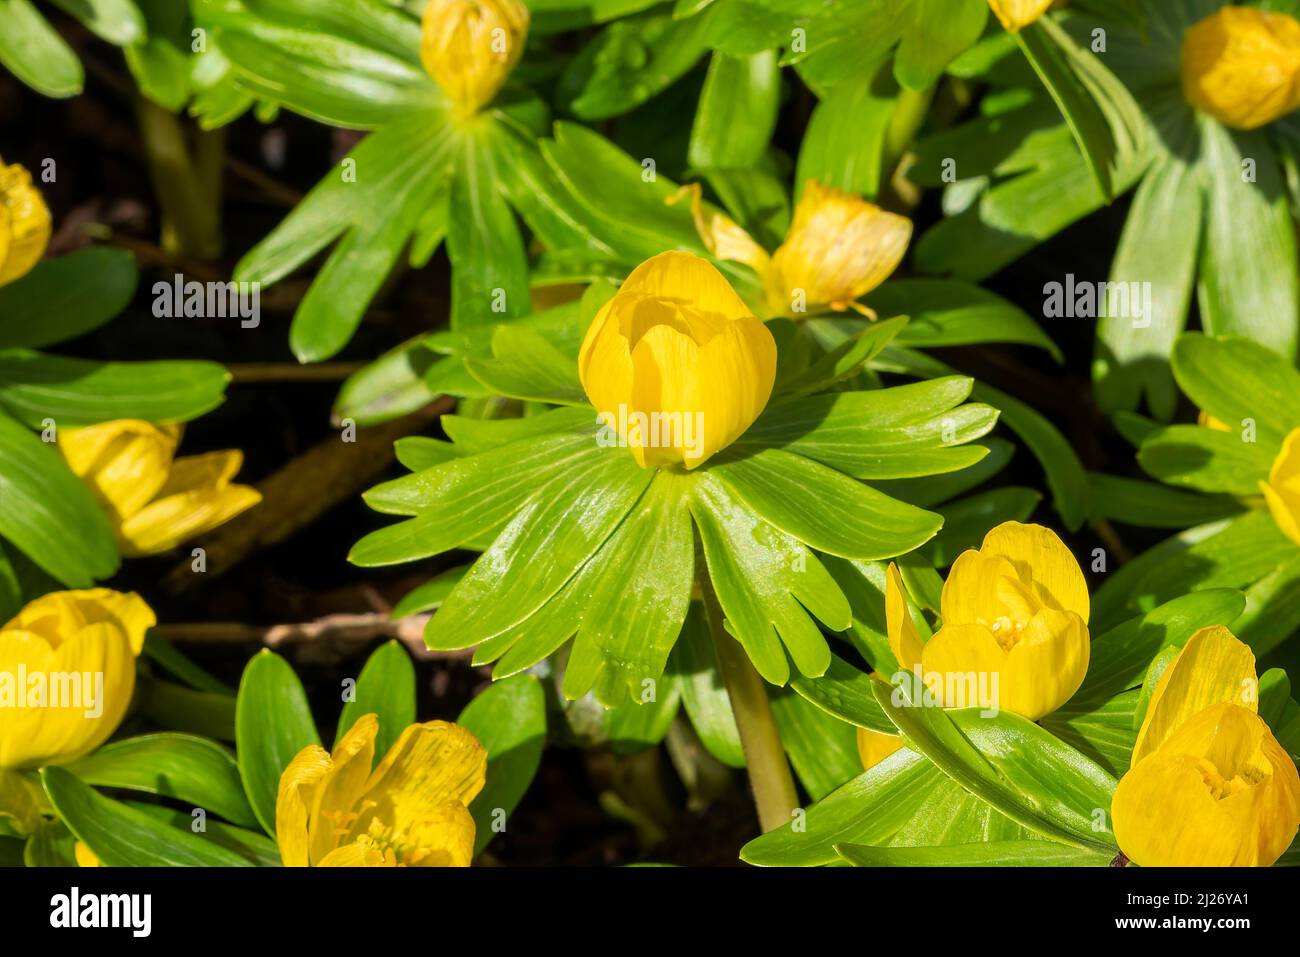 Eranthis hyemalis eine im späten Winter blühende Pflanze mit einer gelben  Winterblüte, die allgemein als Winterakonit bekannt ist, Stock-Foto-Bild  Stockfotografie - Alamy